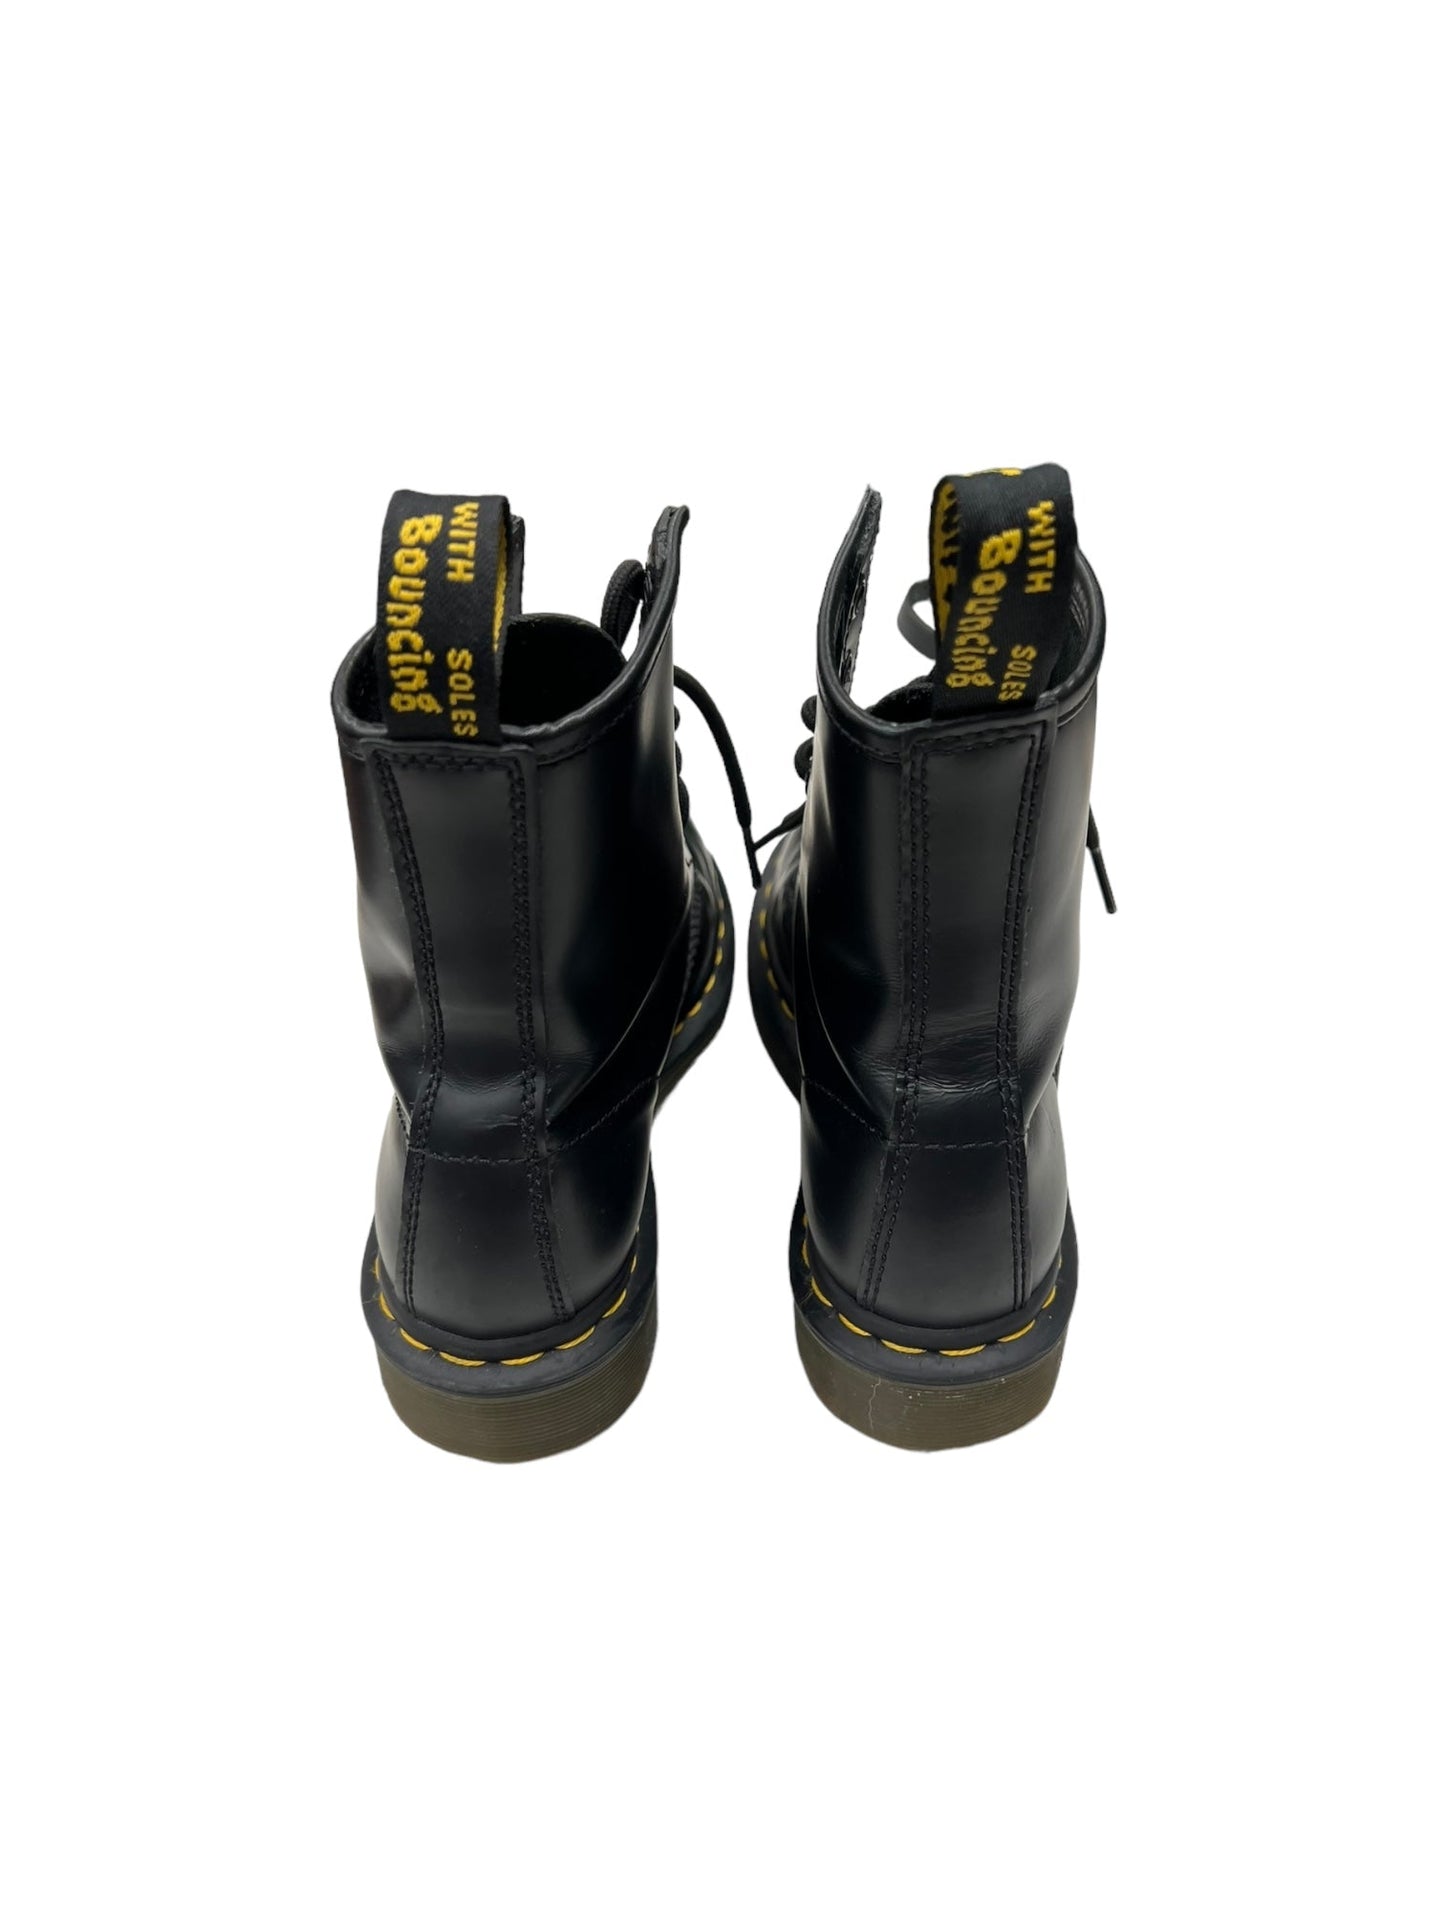 Black Boots Combat Dr Martens, Size 5